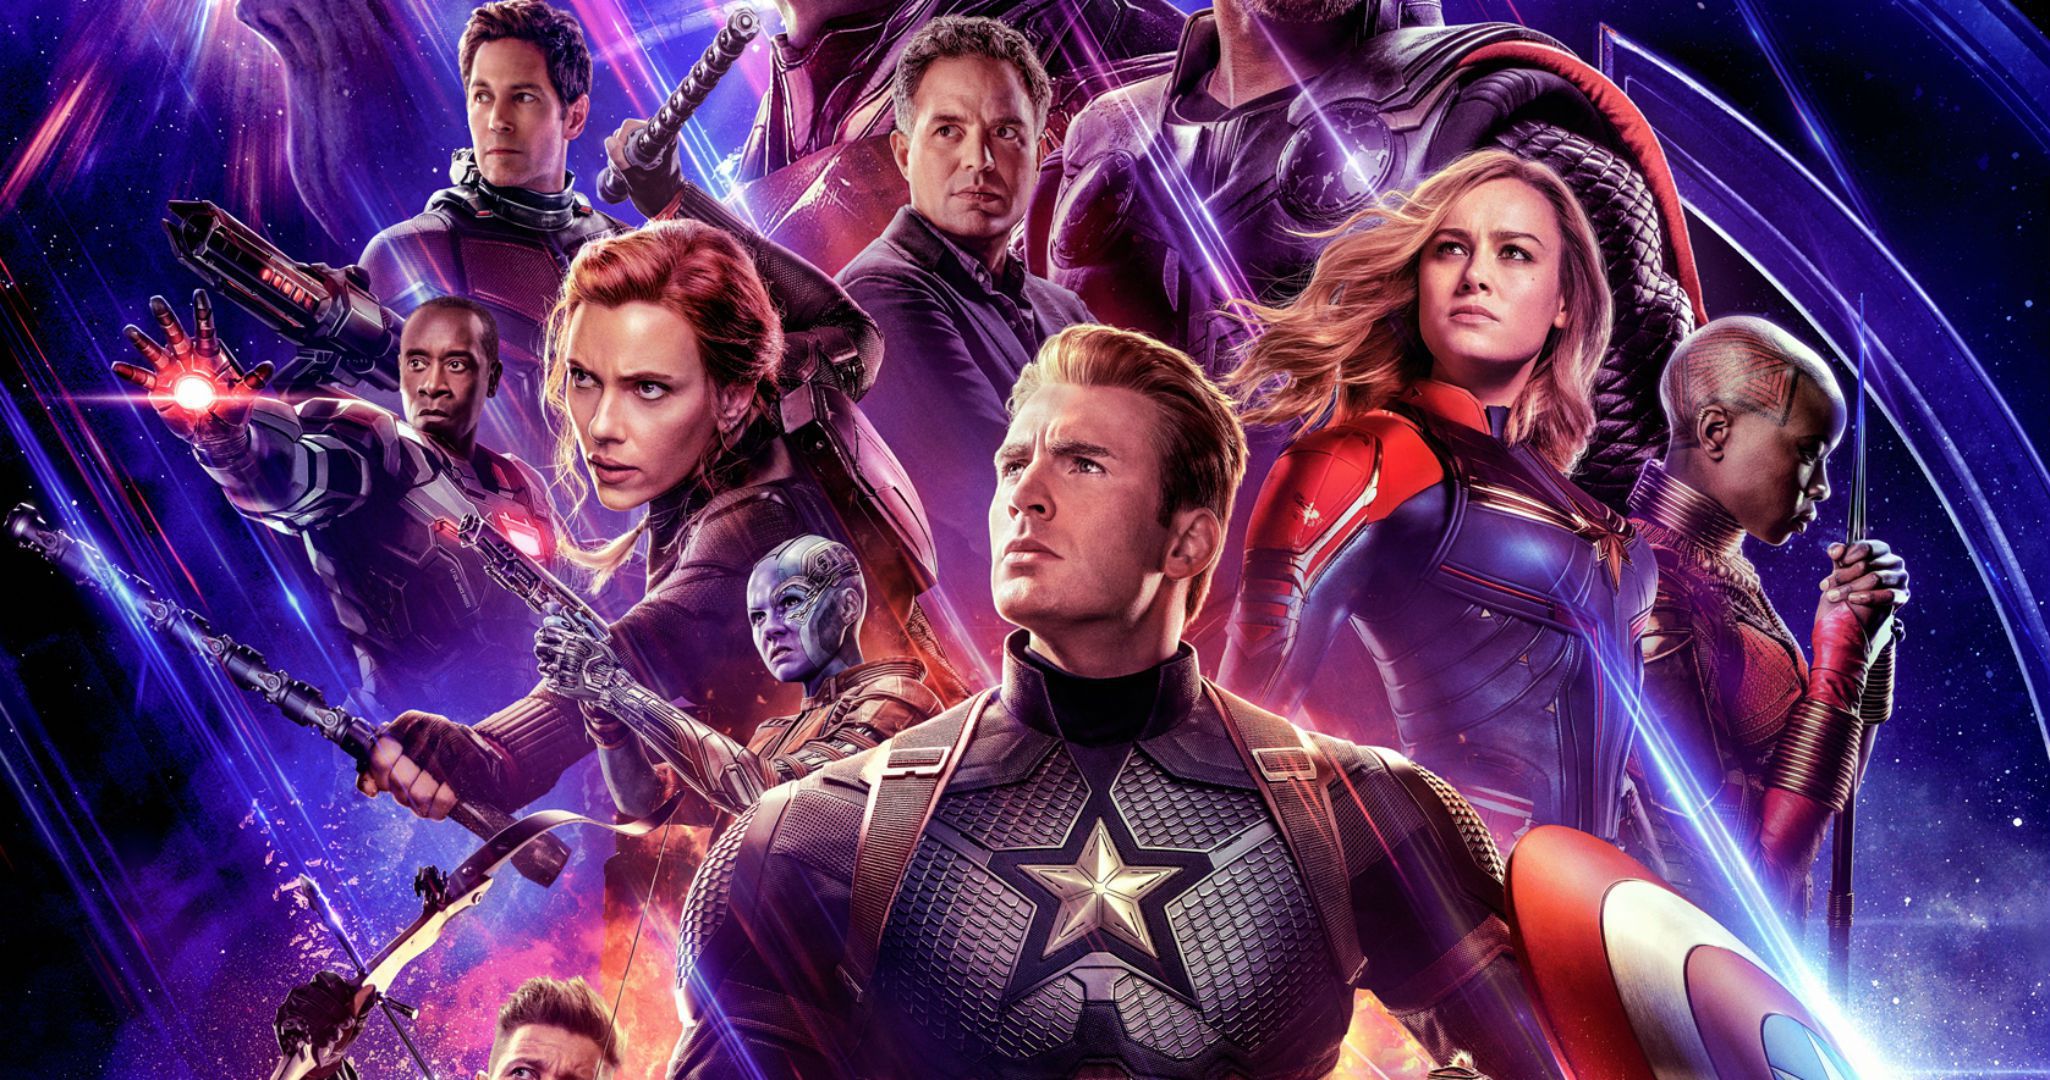 “Avengers: Endgame” supera “Avatar” e é o filme com a melhor bilheteira de sempre, sem contar com a inflação